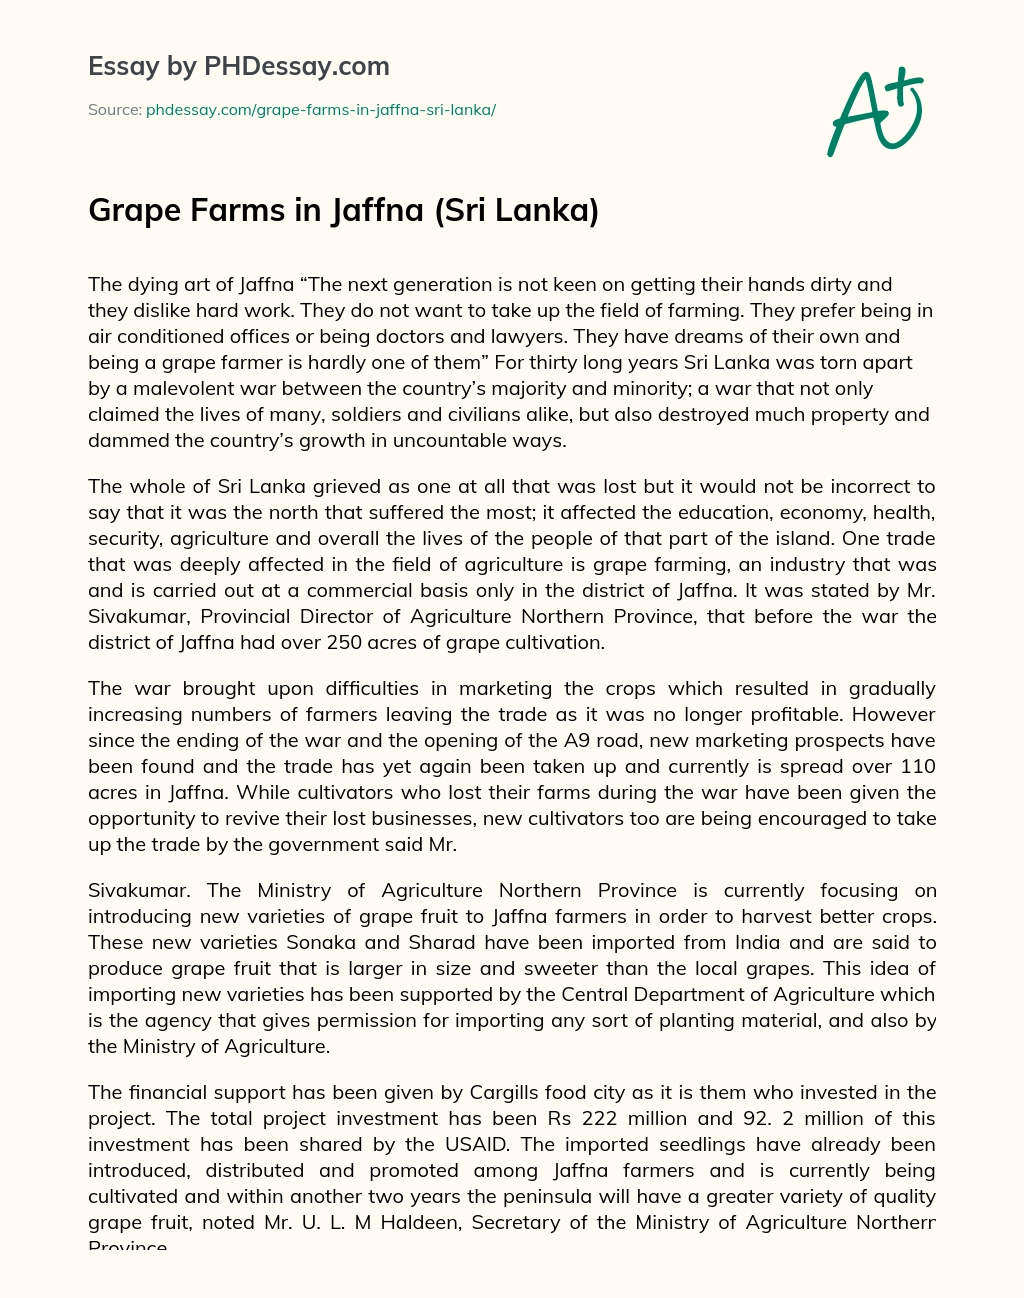 Grape Farms in Jaffna (Sri Lanka) essay